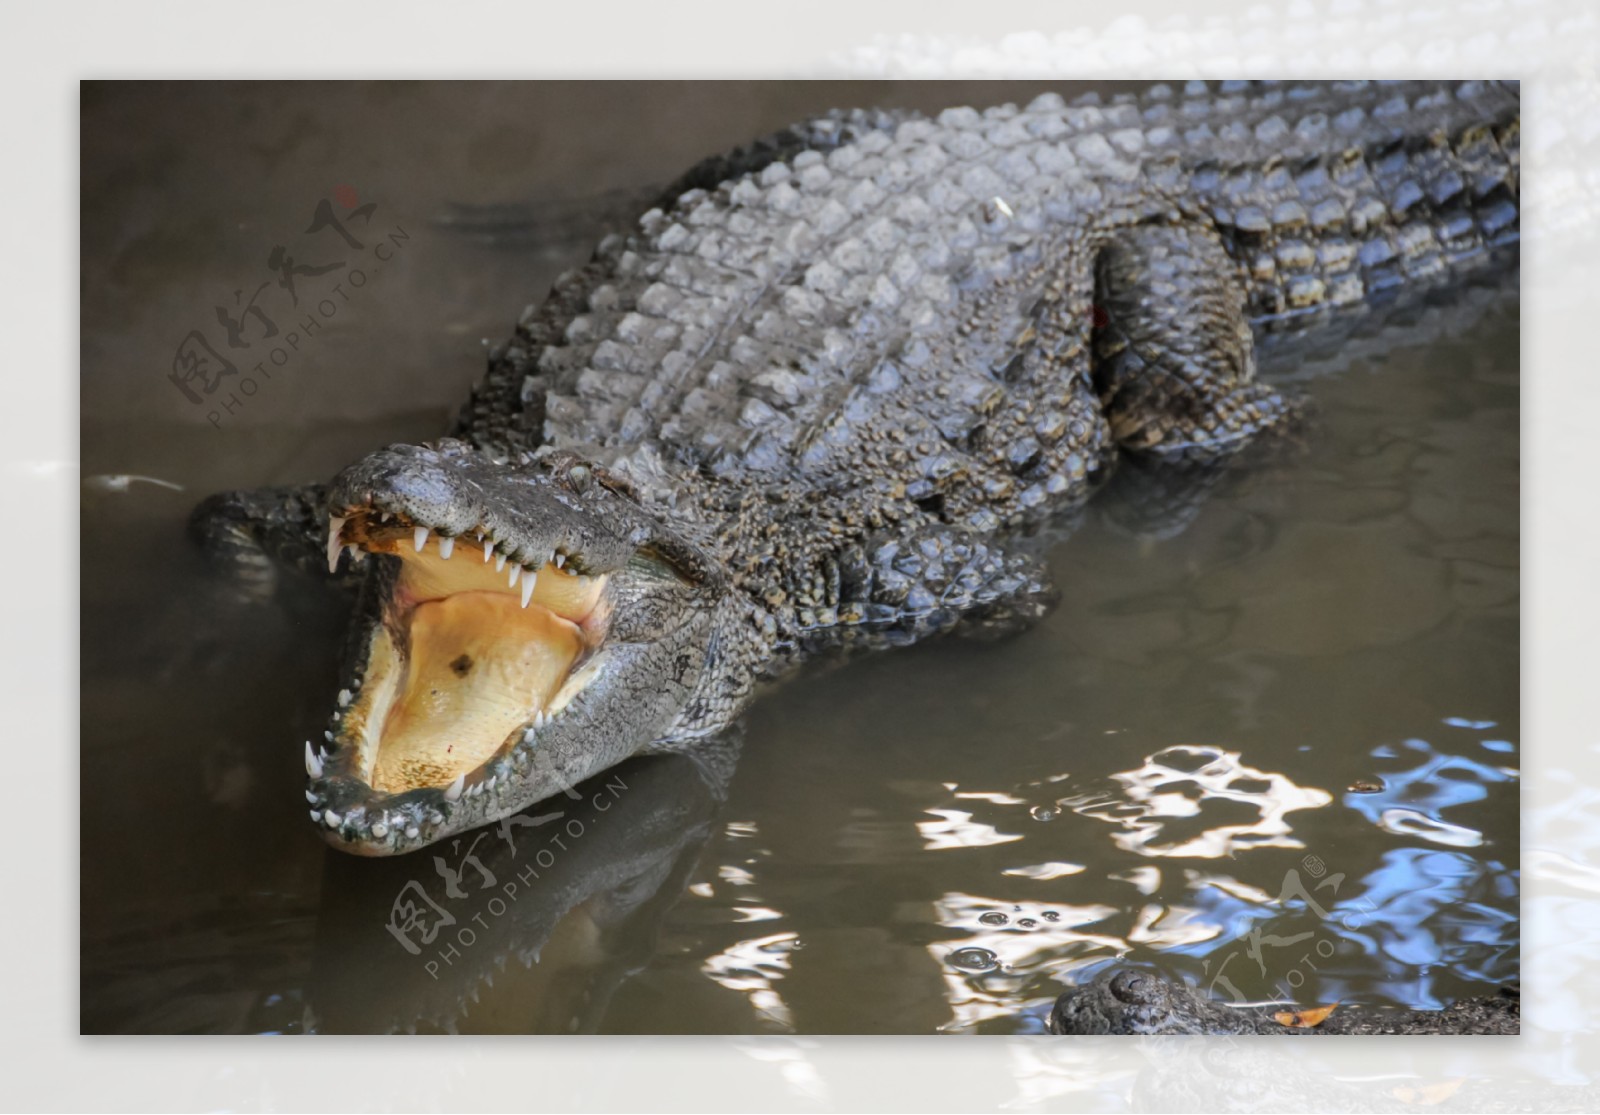 鳄鱼嘴 库存照片. 图片 包括有 危险, 沼泽, 沼泽地, 爬行动物, 佛罗里达, 行程, 鳄鱼, 野生生物 - 13305162